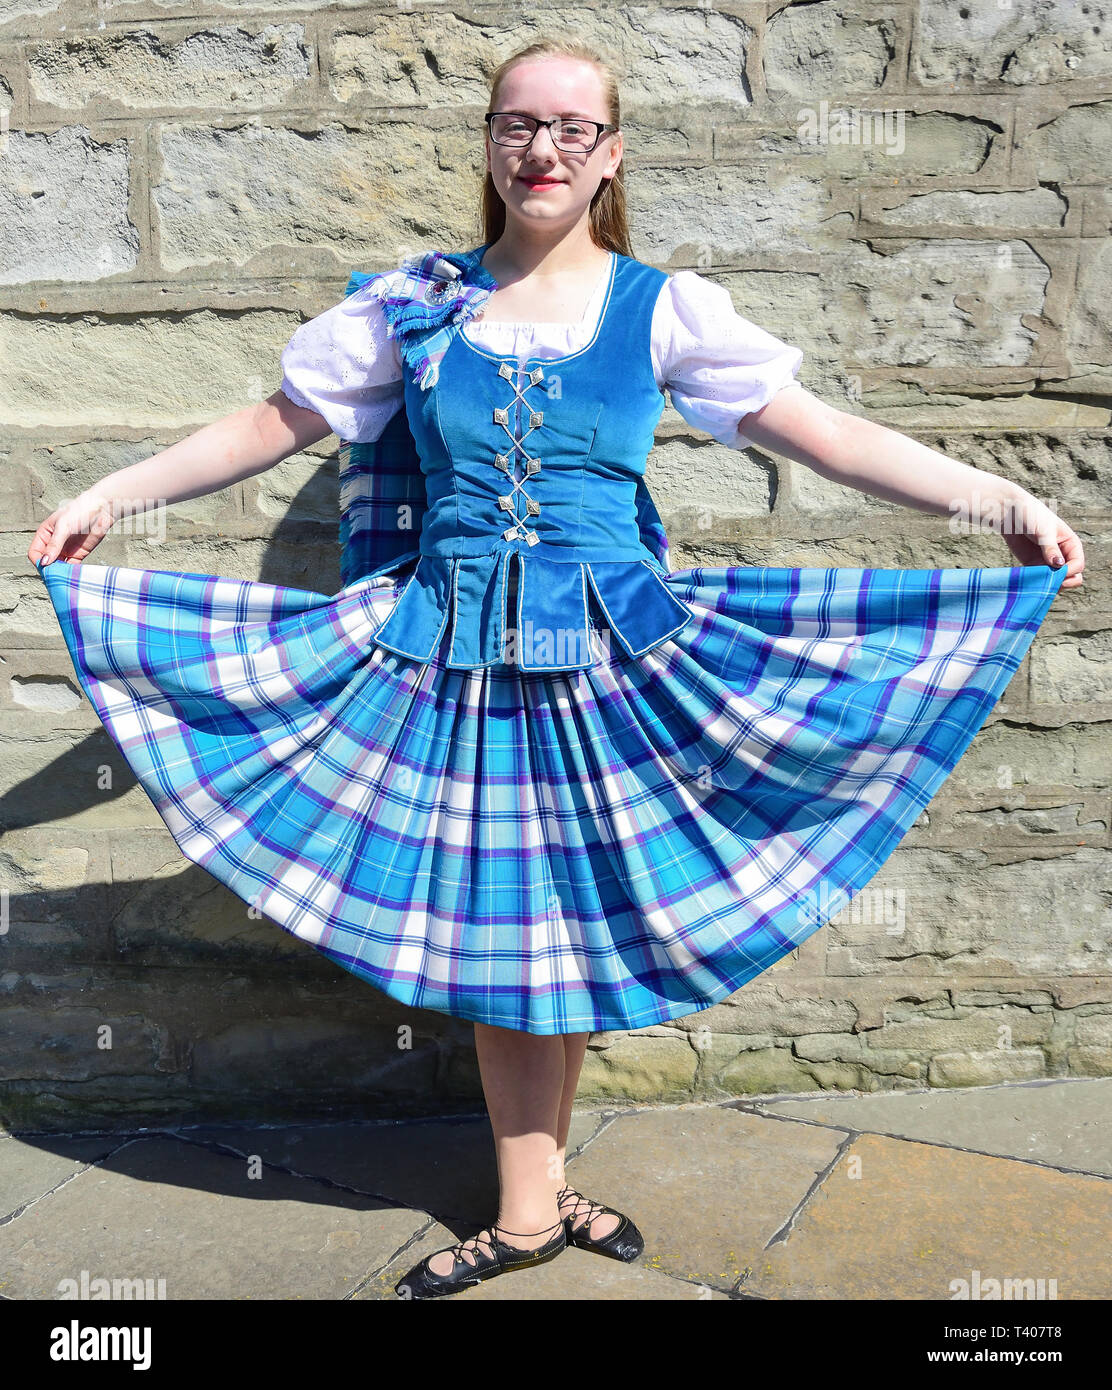 Femelle jeune danseur écossais, de marché Cross, Lerwick, Shetland, les îles du Nord, Ecosse, Royaume-Uni Banque D'Images